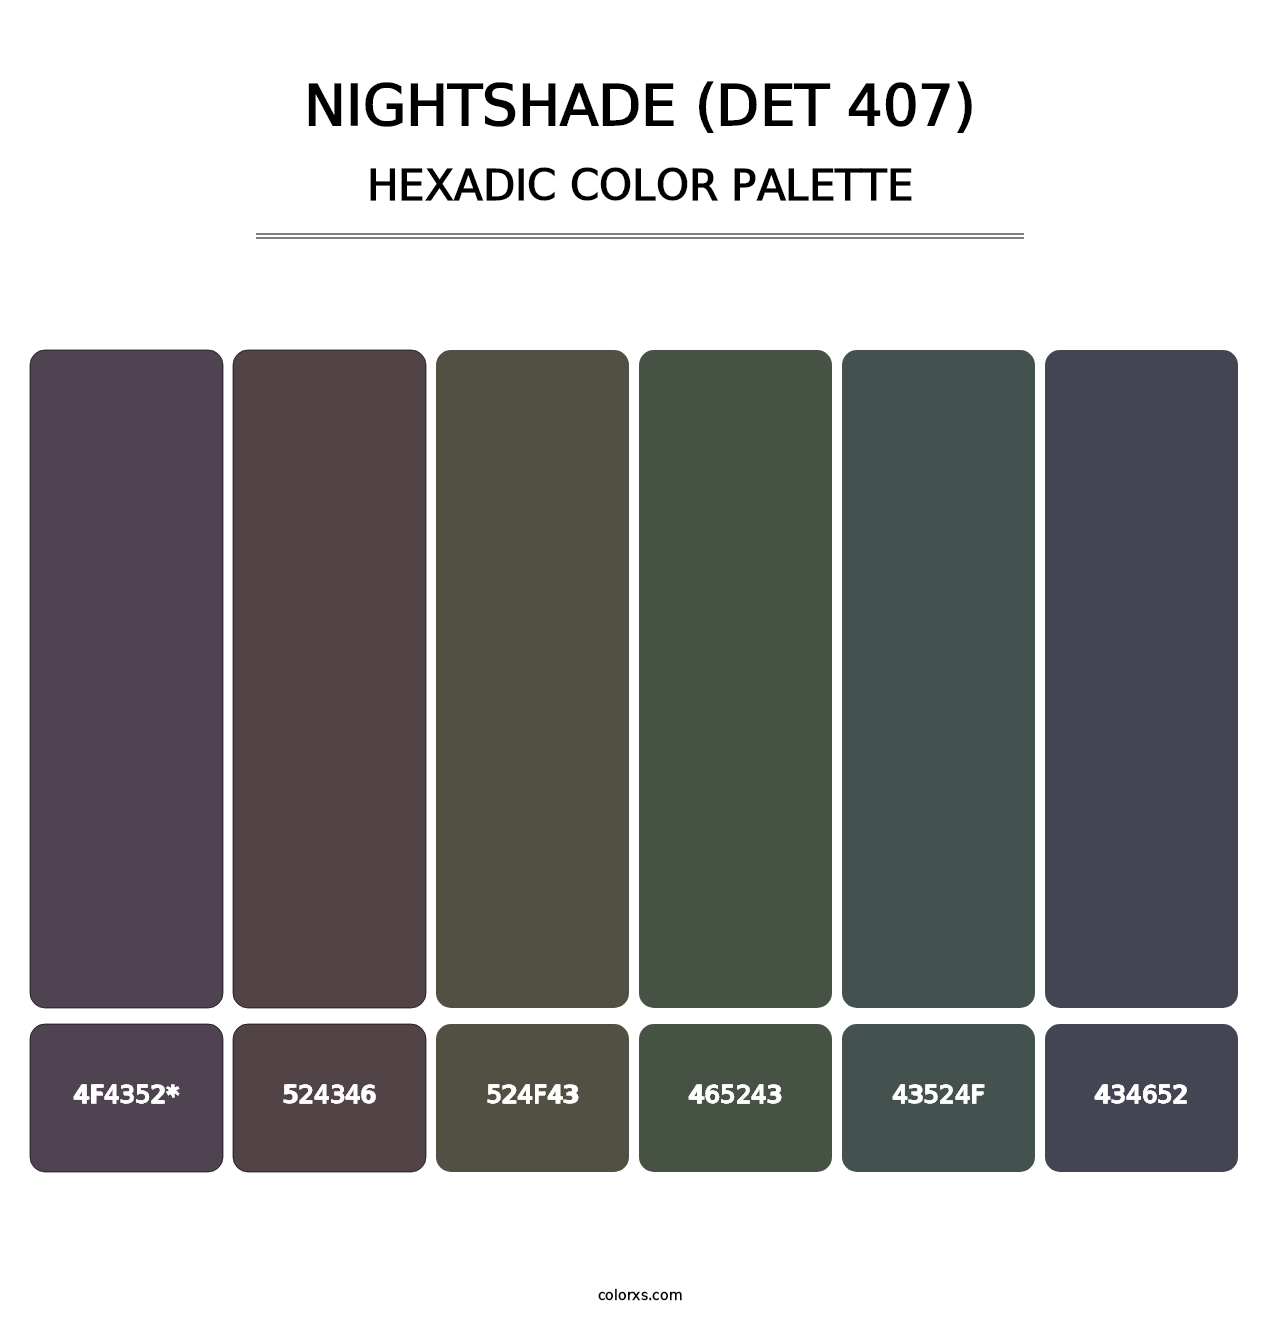 Nightshade (DET 407) - Hexadic Color Palette